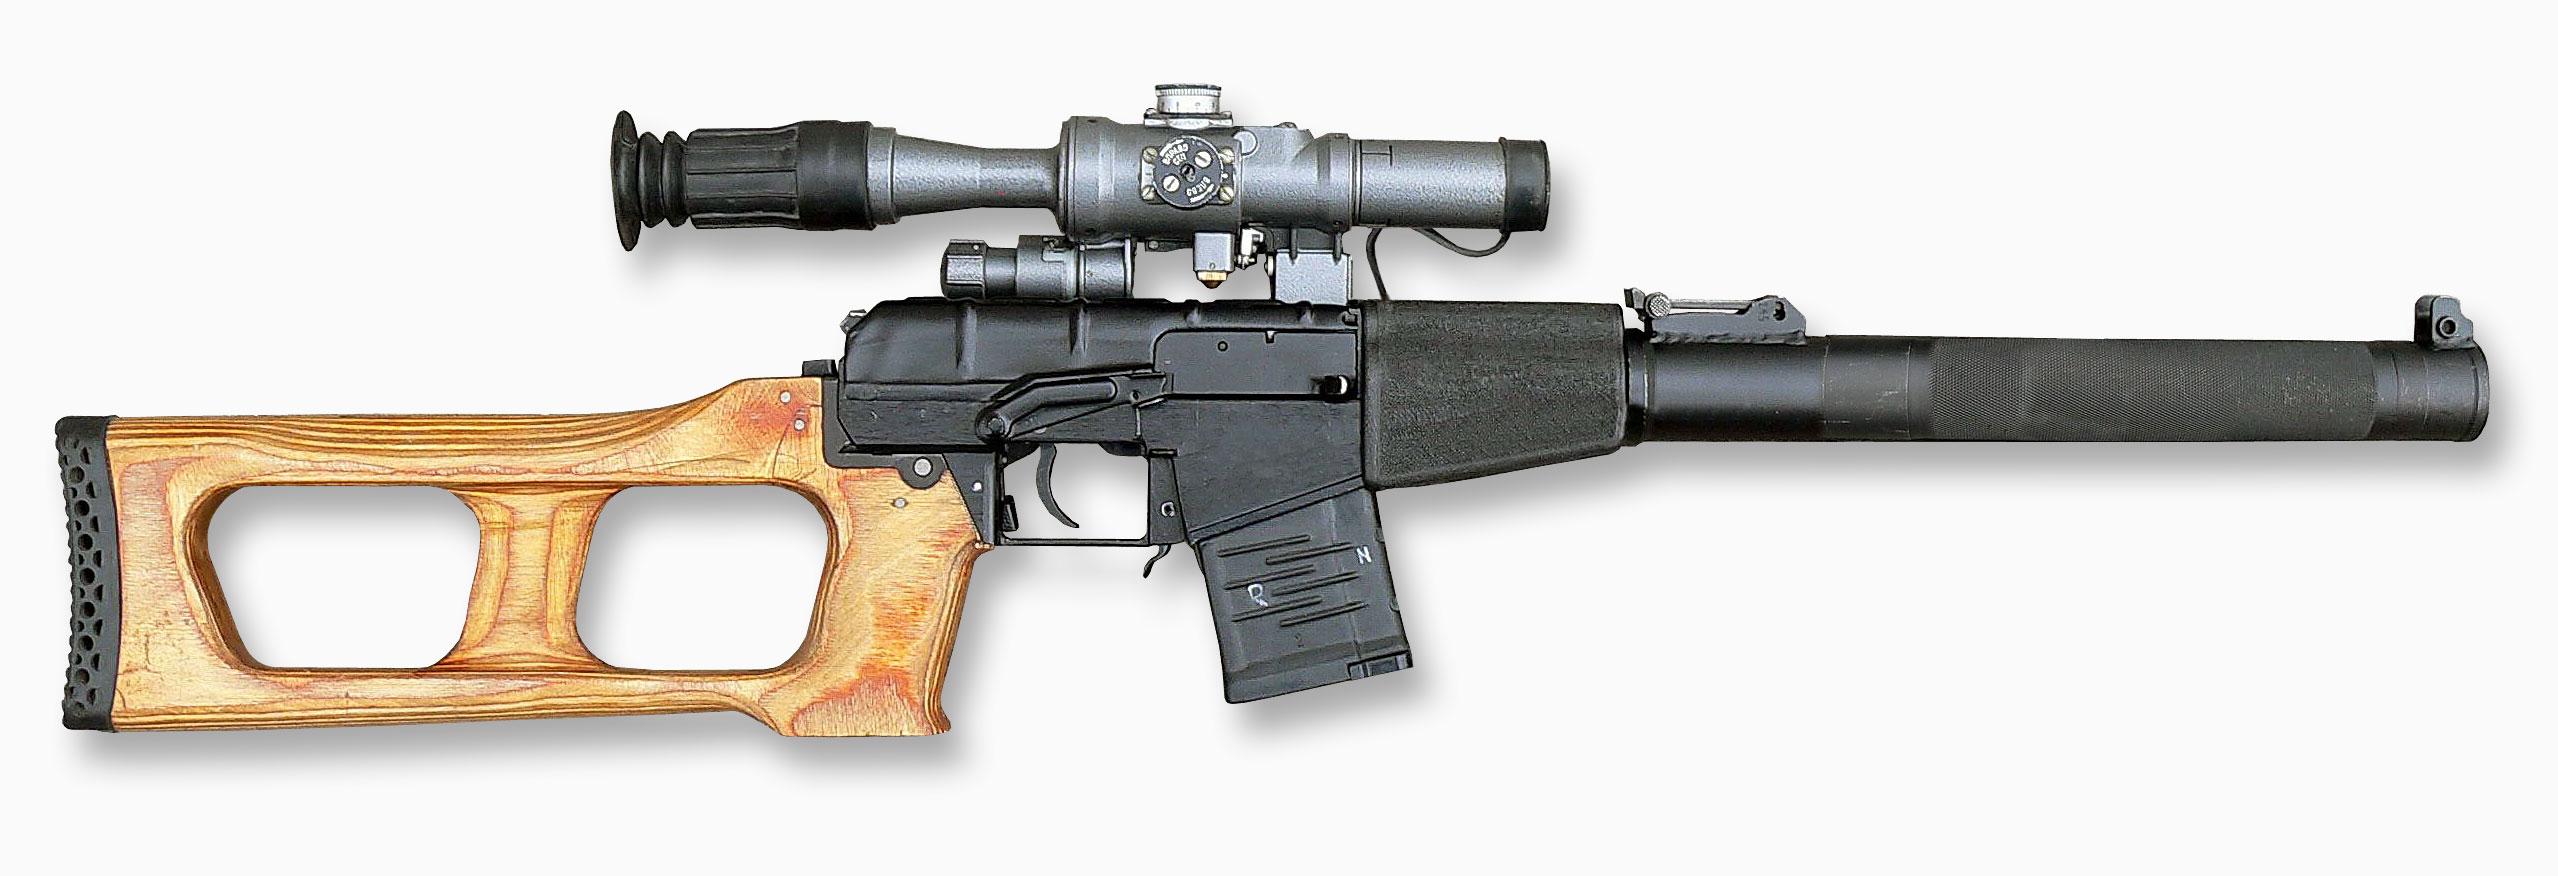 VSS Vintorez Sniper Rifle #31